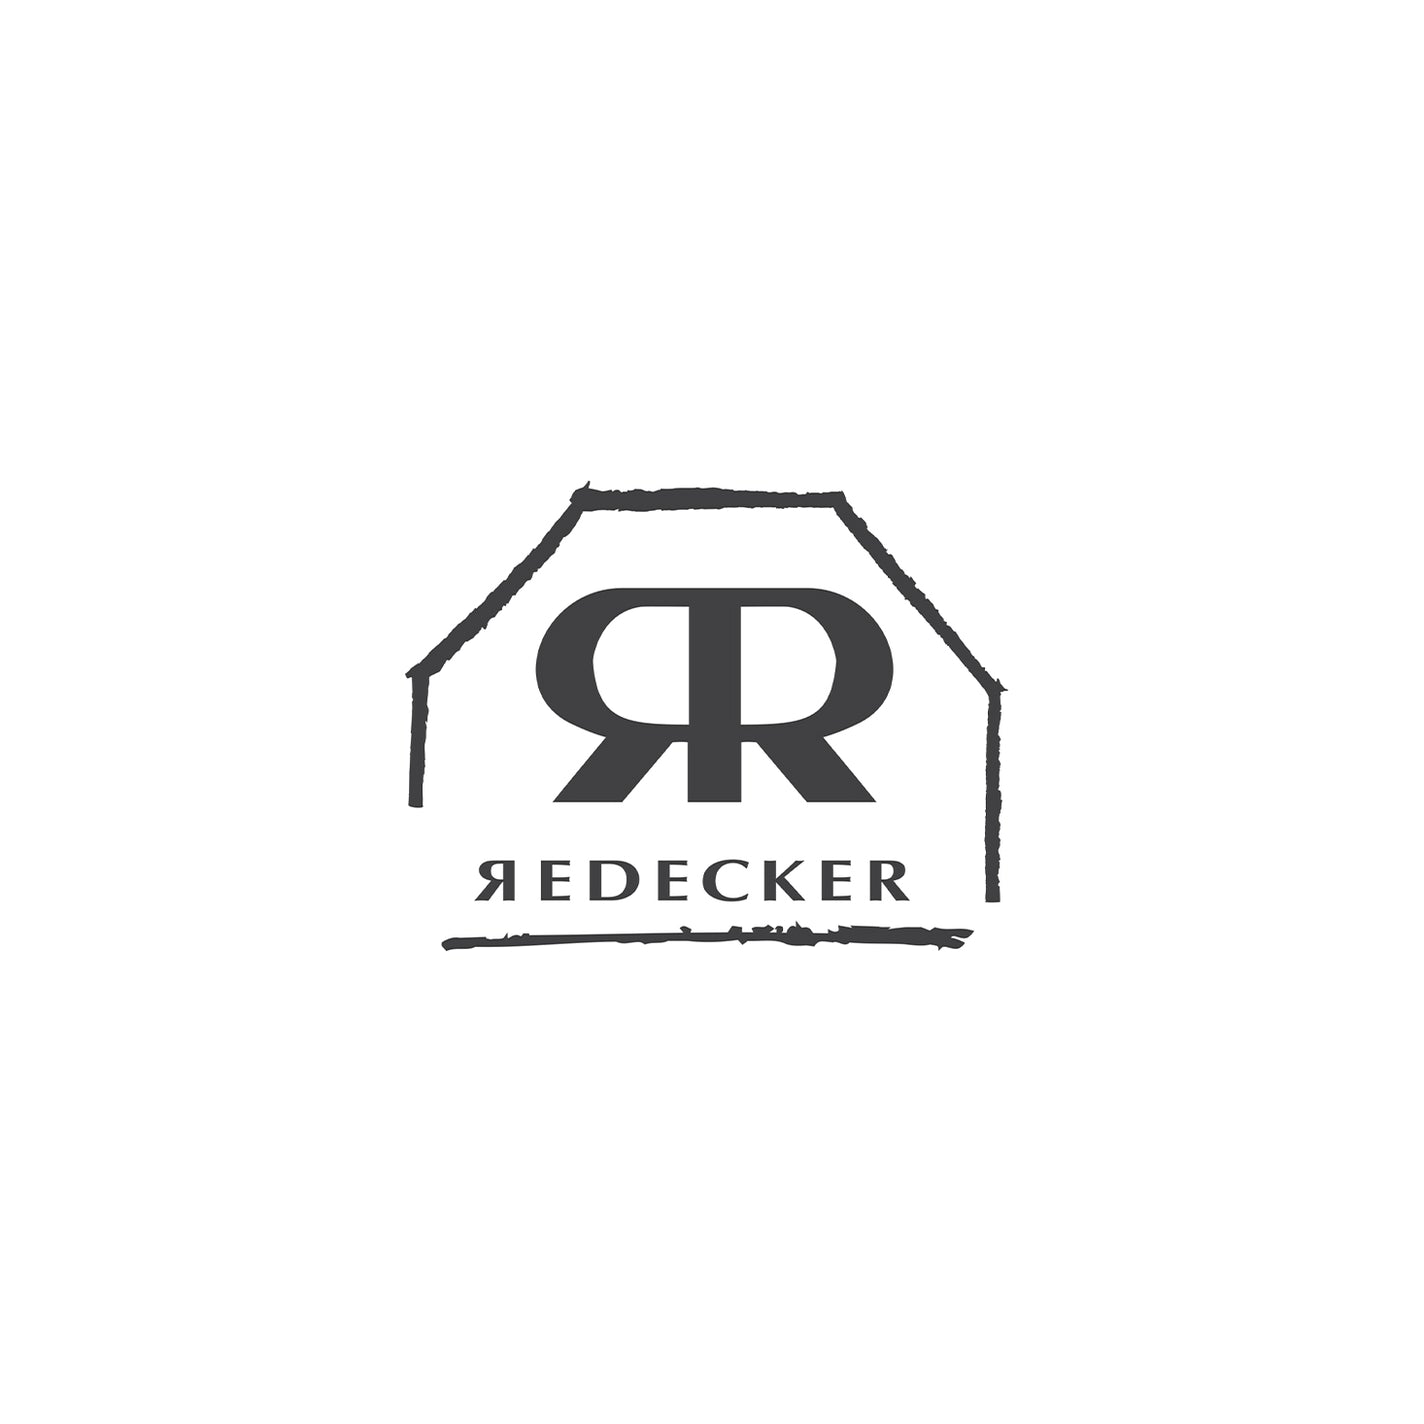 Redecker Housekeeping Bundle - Value $219